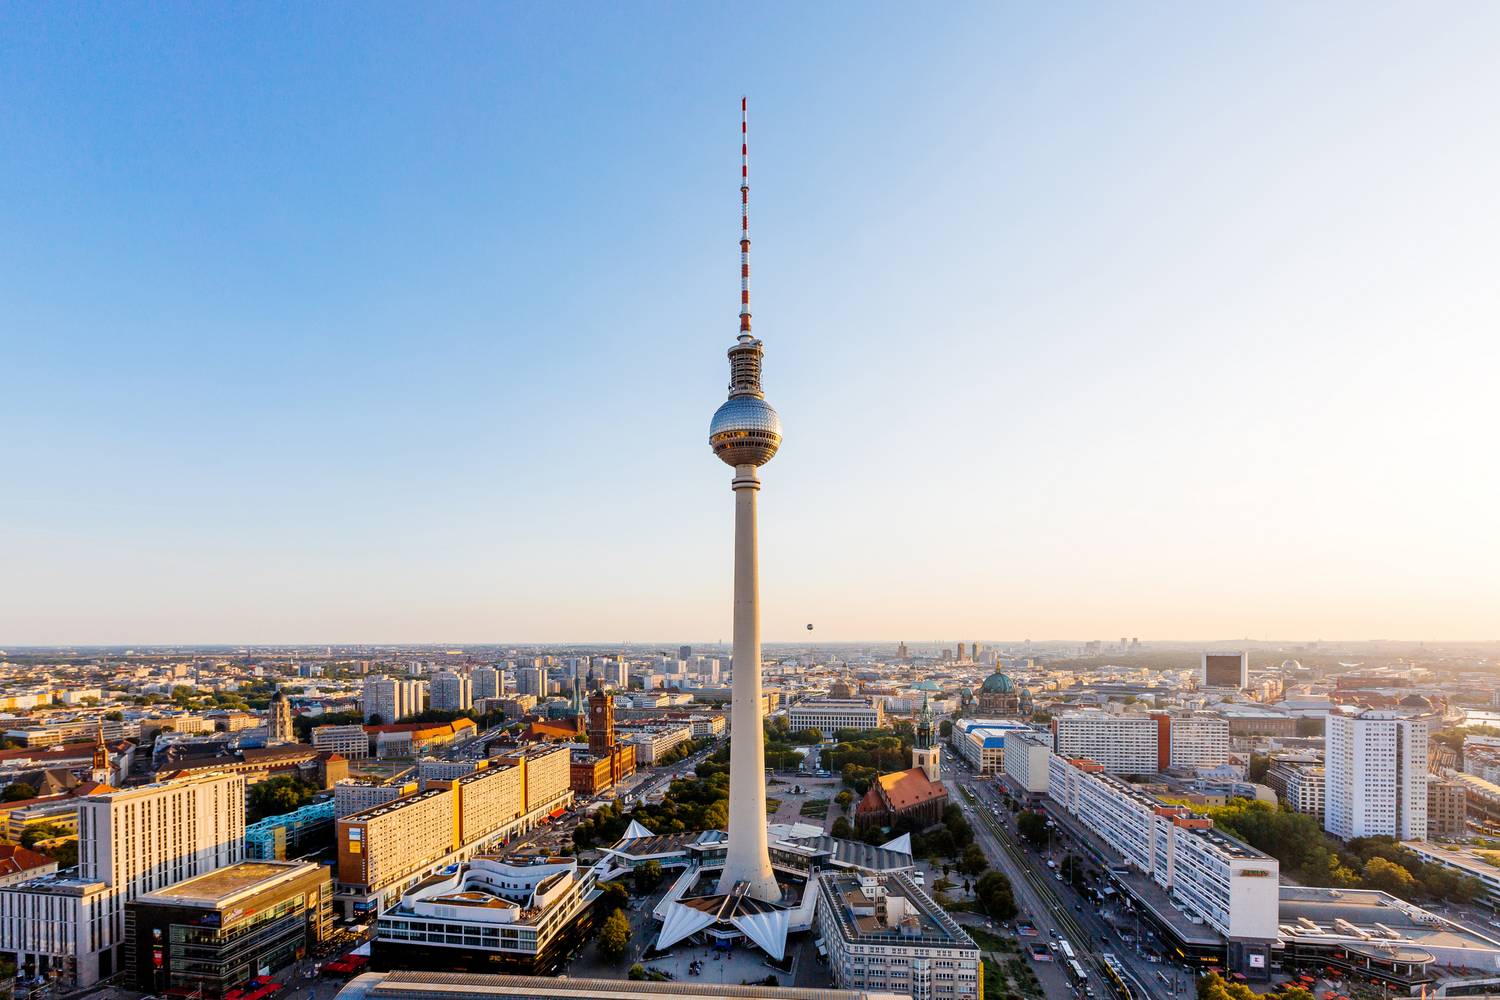 Németország legmagasabb épülete a főváros központjában álló berlini tévétorony, melynek tetején egy 360 fokos panorámával kecsegtető, körben forgó étterem és bár működik. Bár kétségtelenül nagy élmény a látvány, sokan mégis túl drágának és lélektelennek ítélték meg, ahova felesleges órákig sorban állni. A kiábrándító látnivalók listáján az első helyre került.